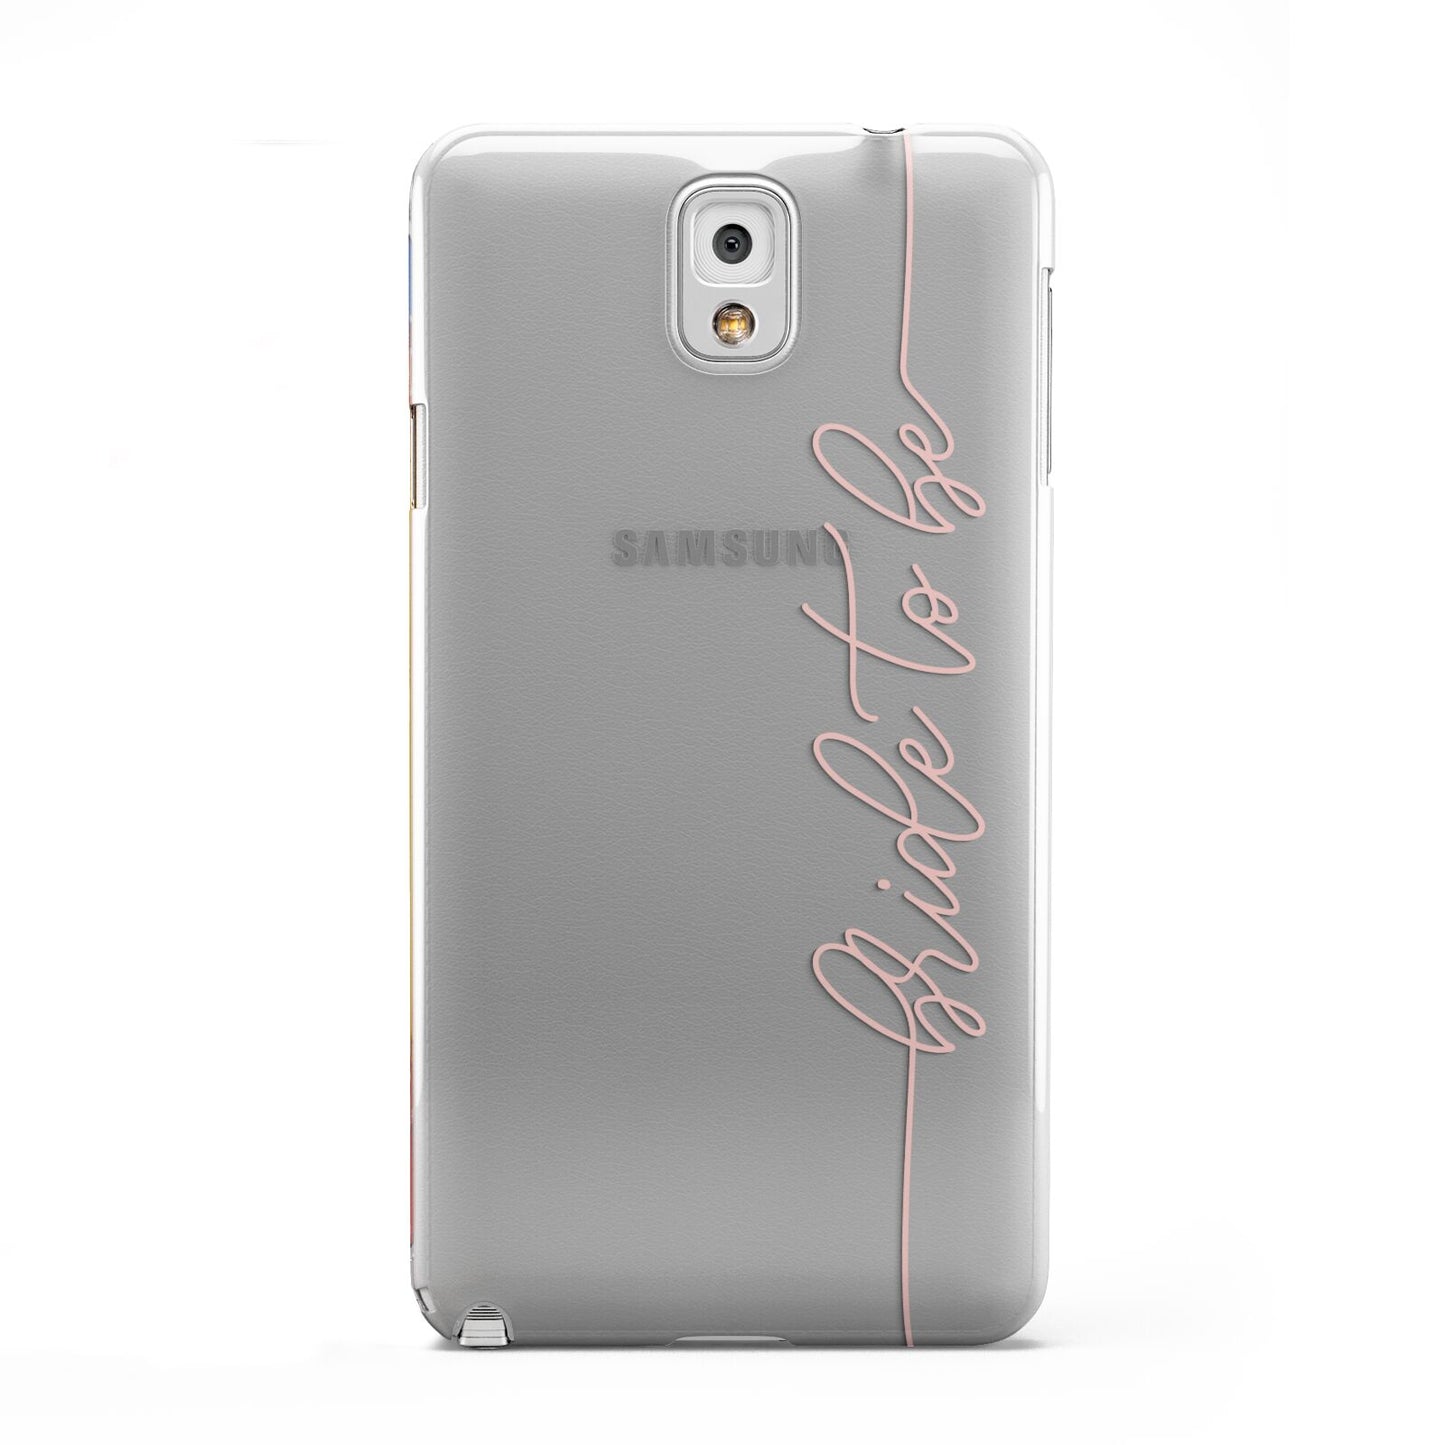 Bride To Be Samsung Galaxy Note 3 Case